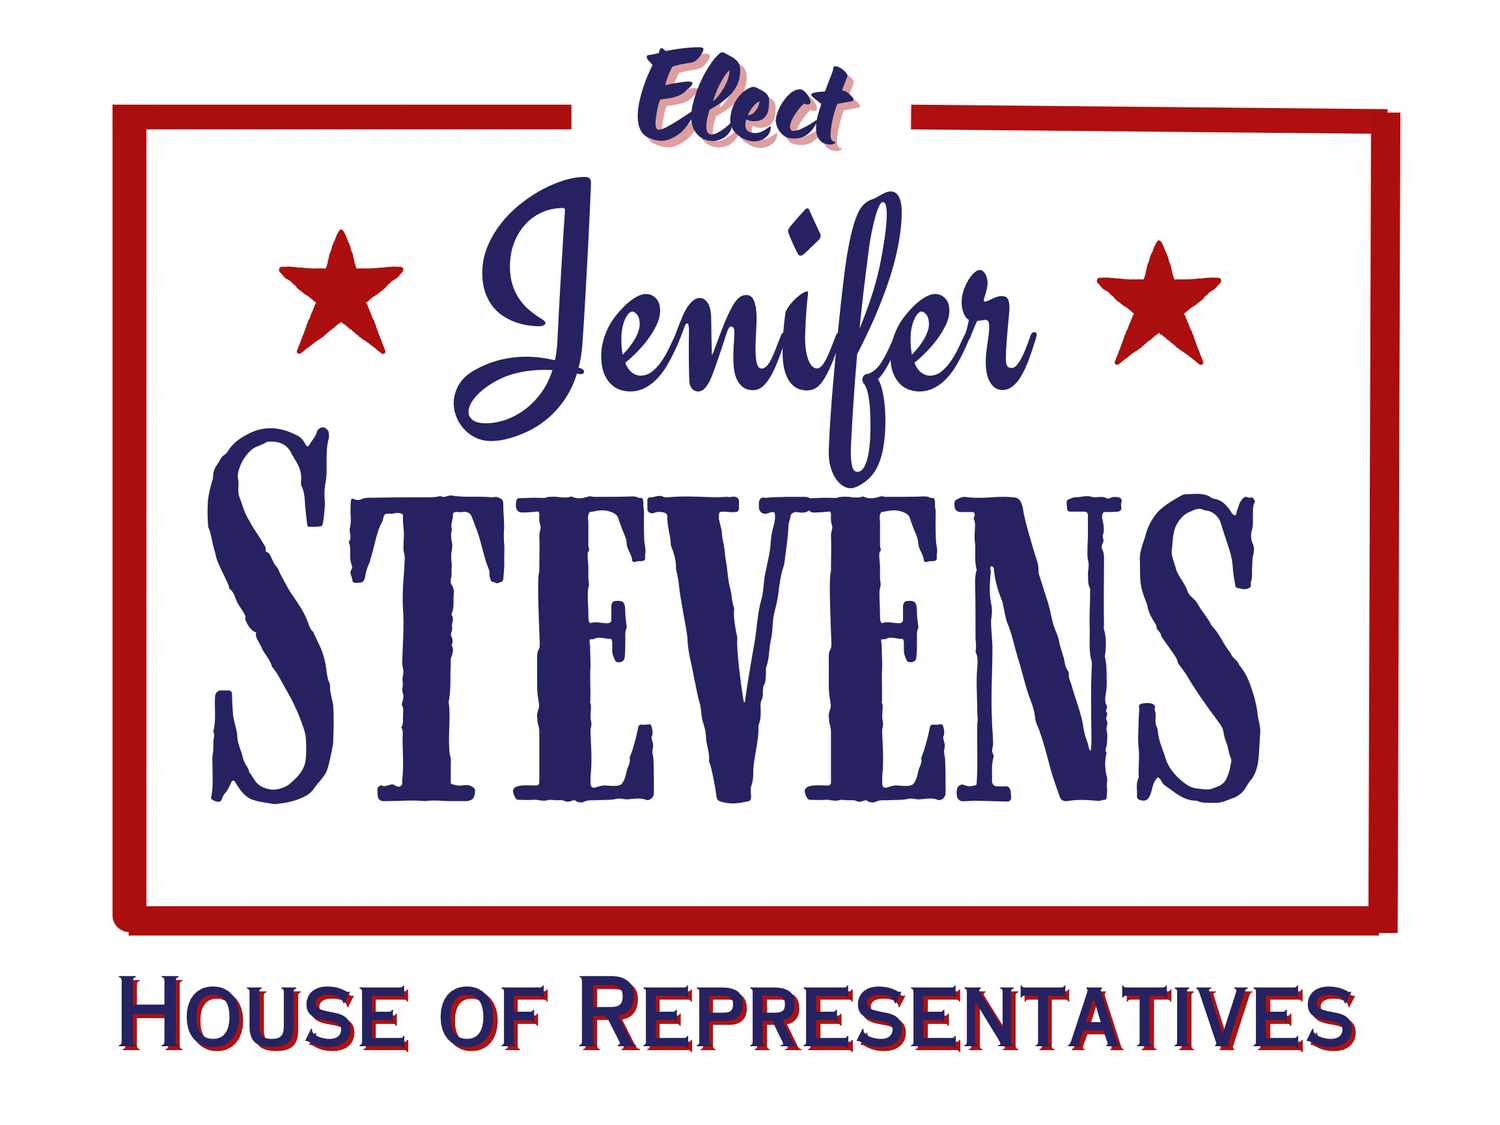 Jenifer Stevens for State House